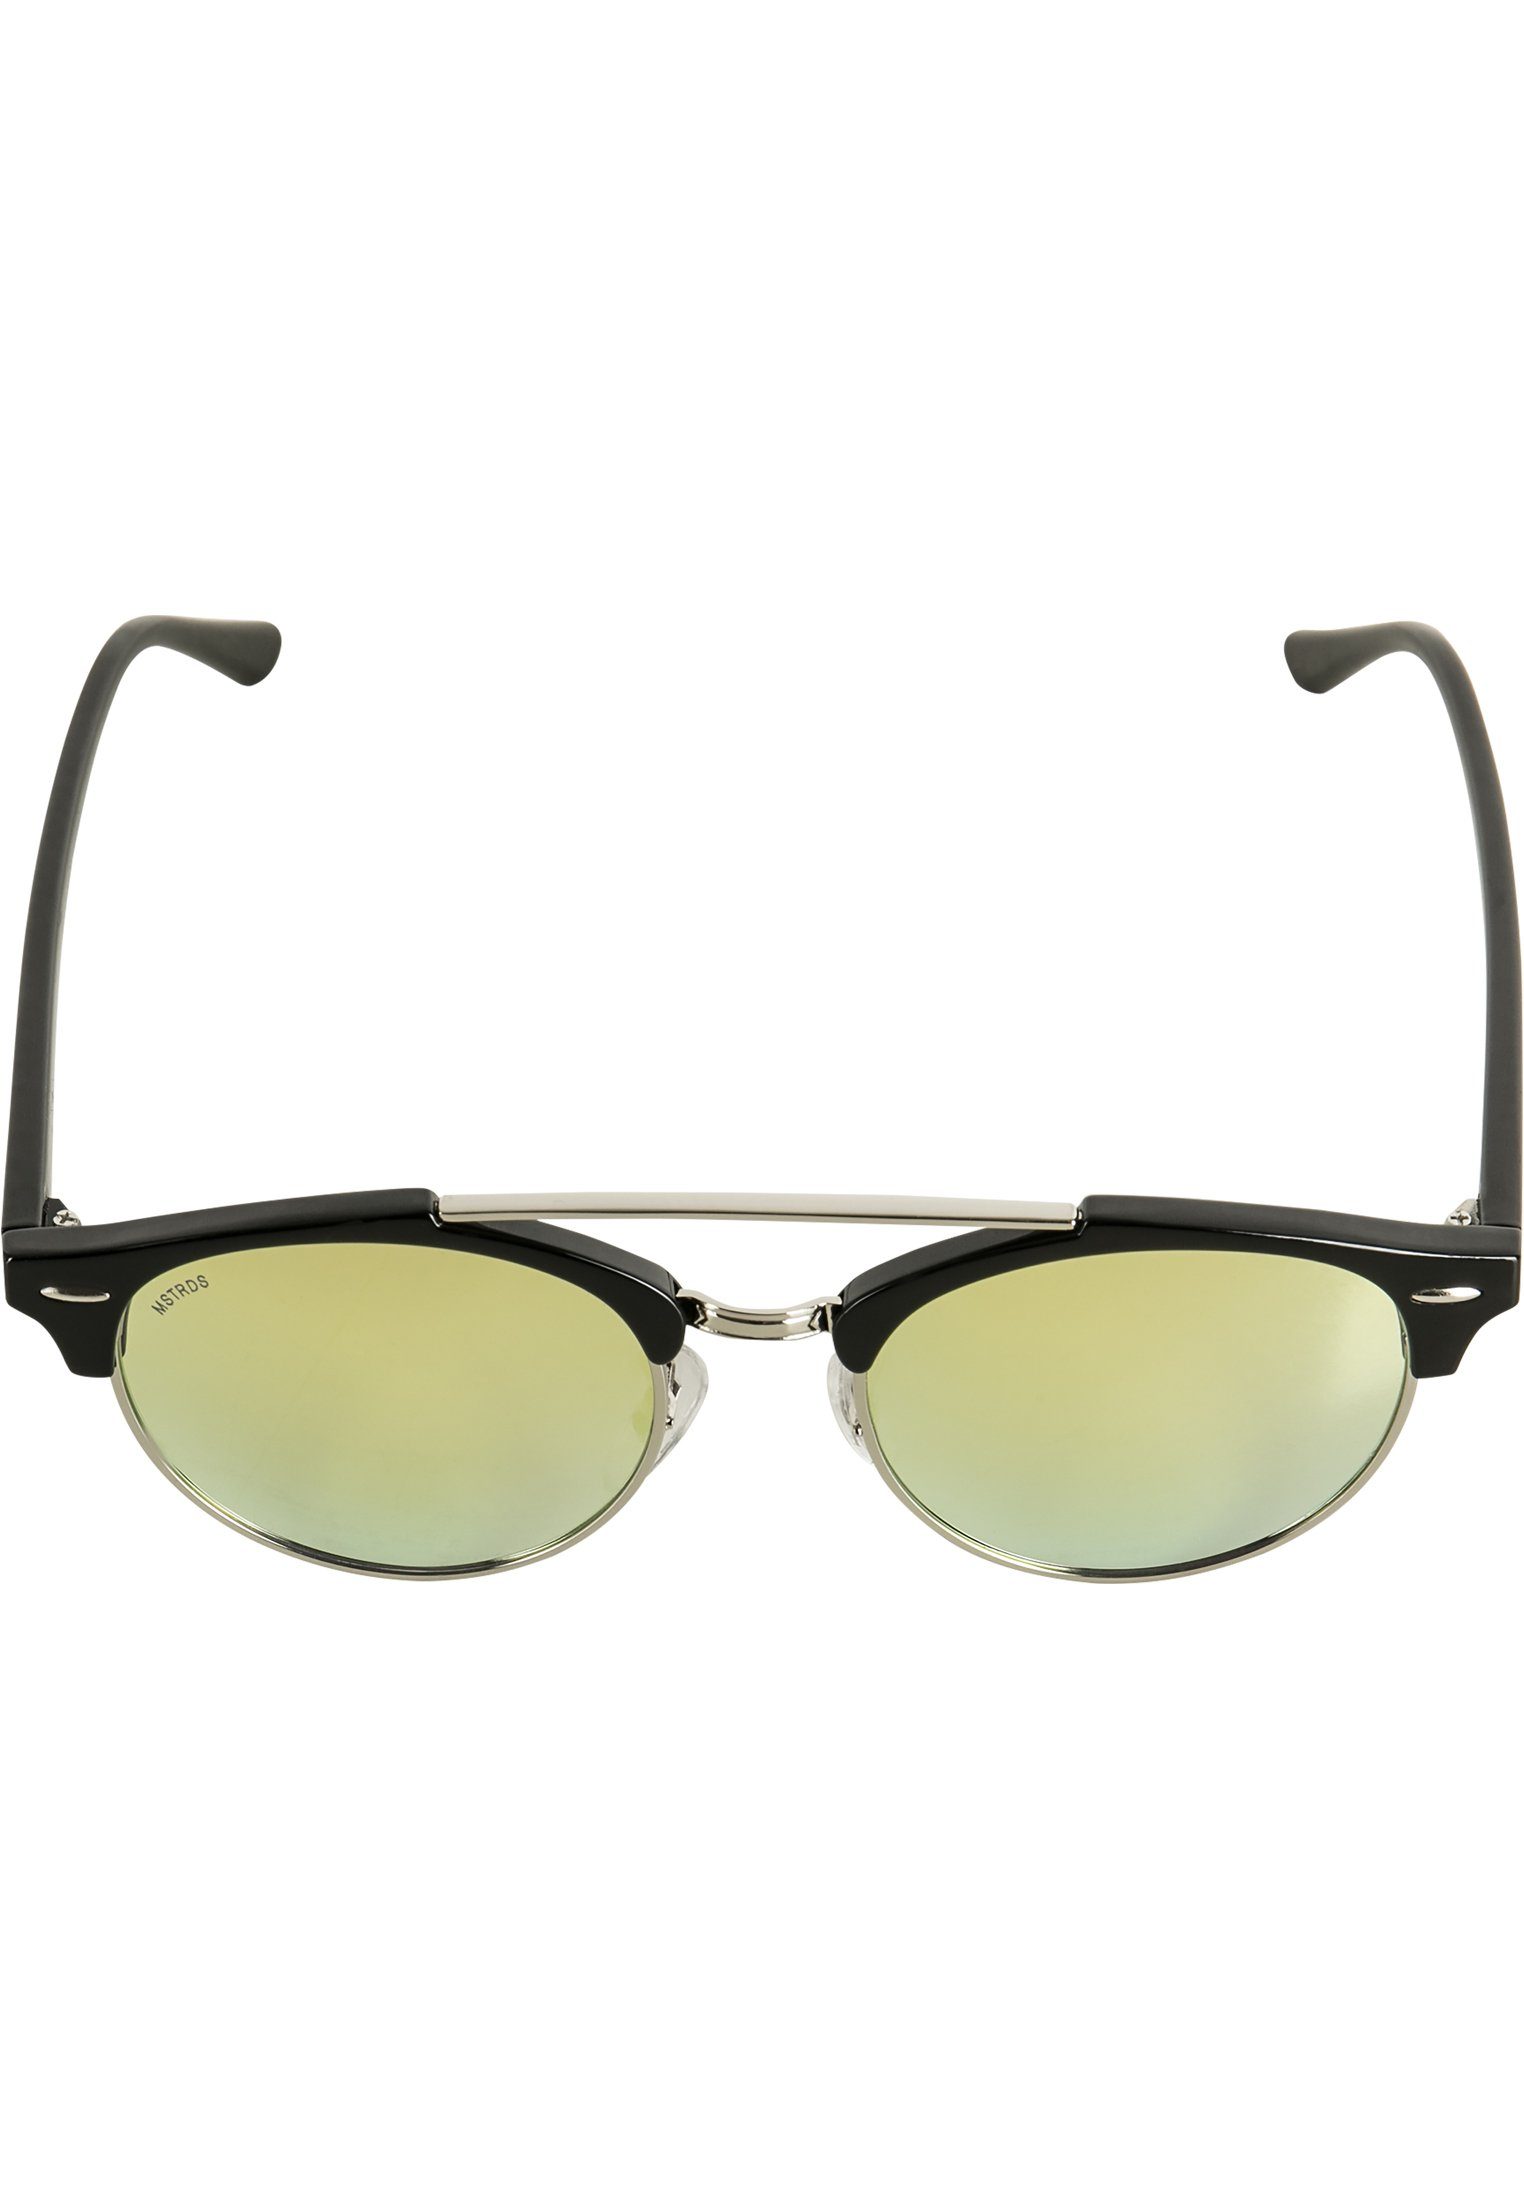 MSTRDS Sonnenbrille Accessoires Sunglasses April